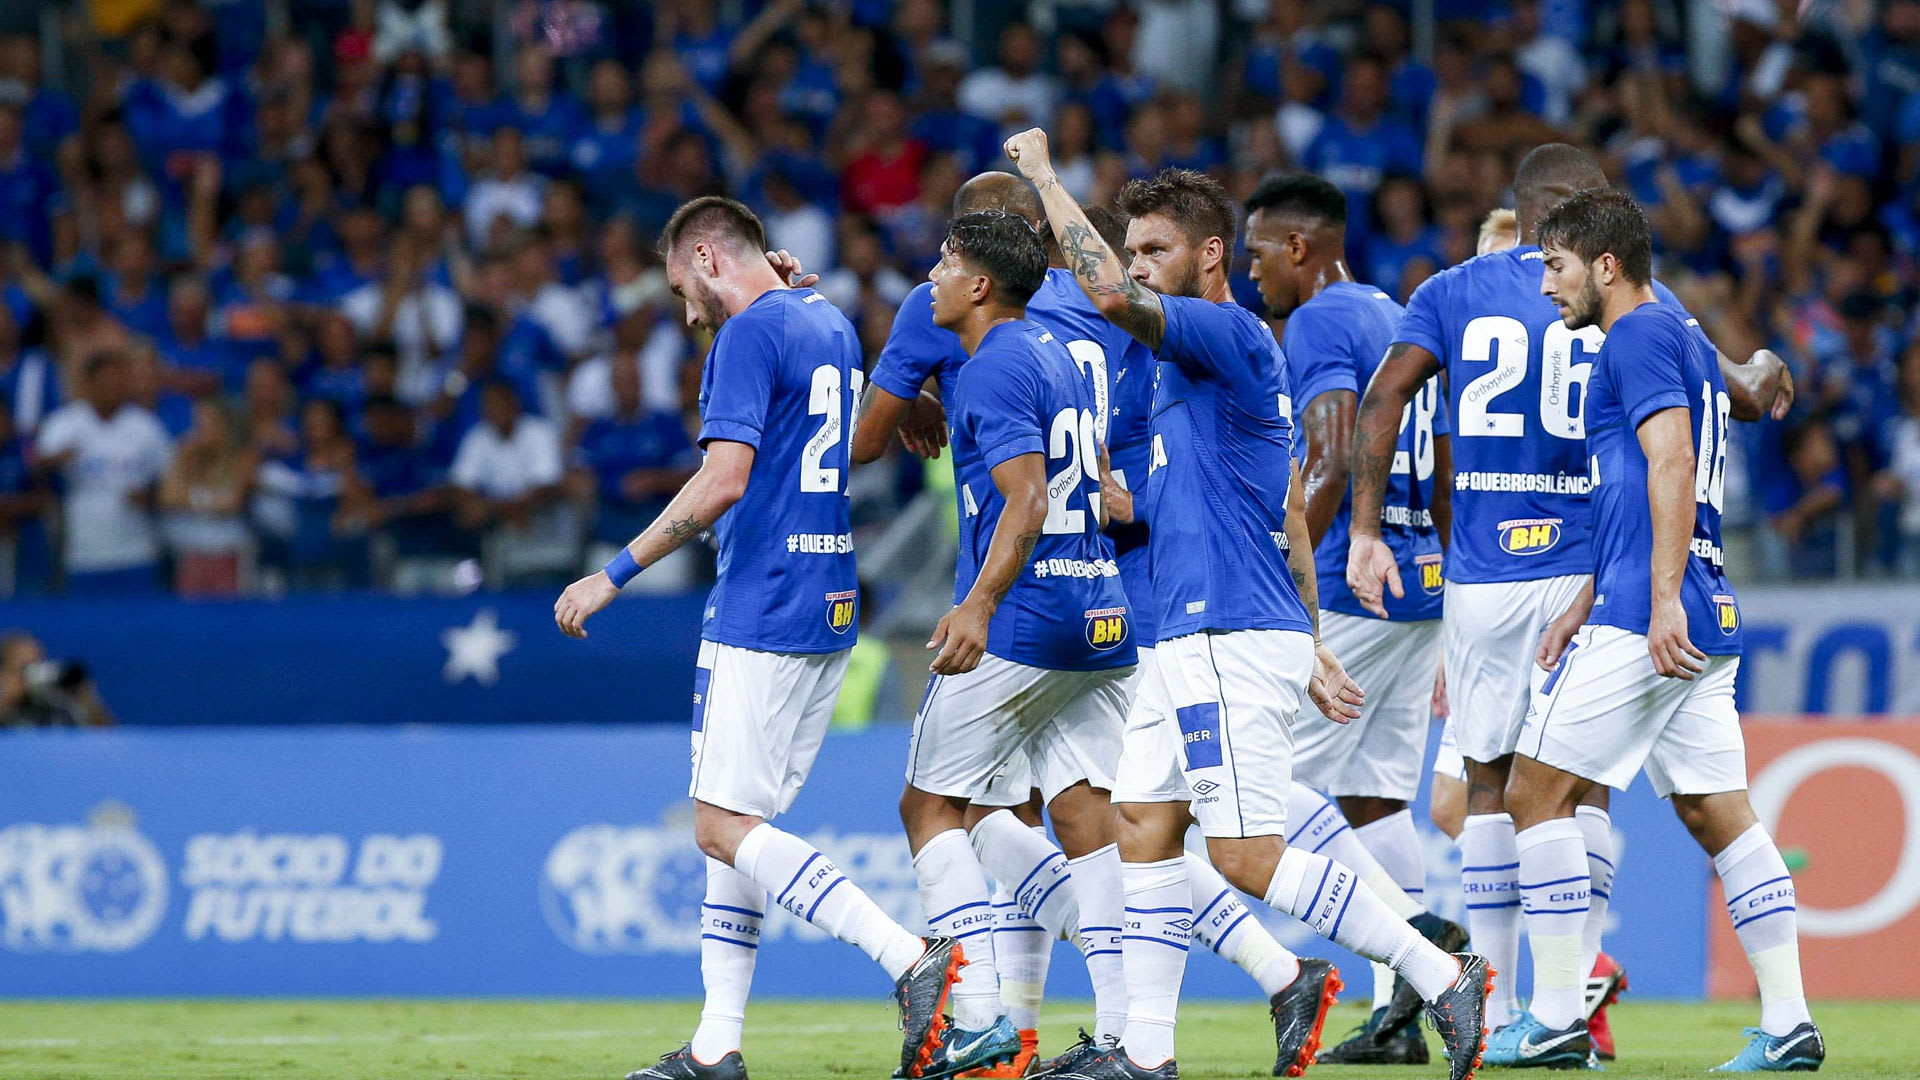 Chance do Cruzeiro ir para a Libertadores pelo BR-18 diminui; veja probabilidades